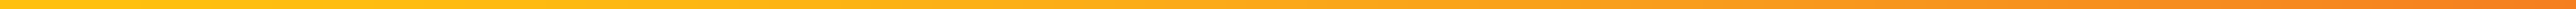 yellow-gradient